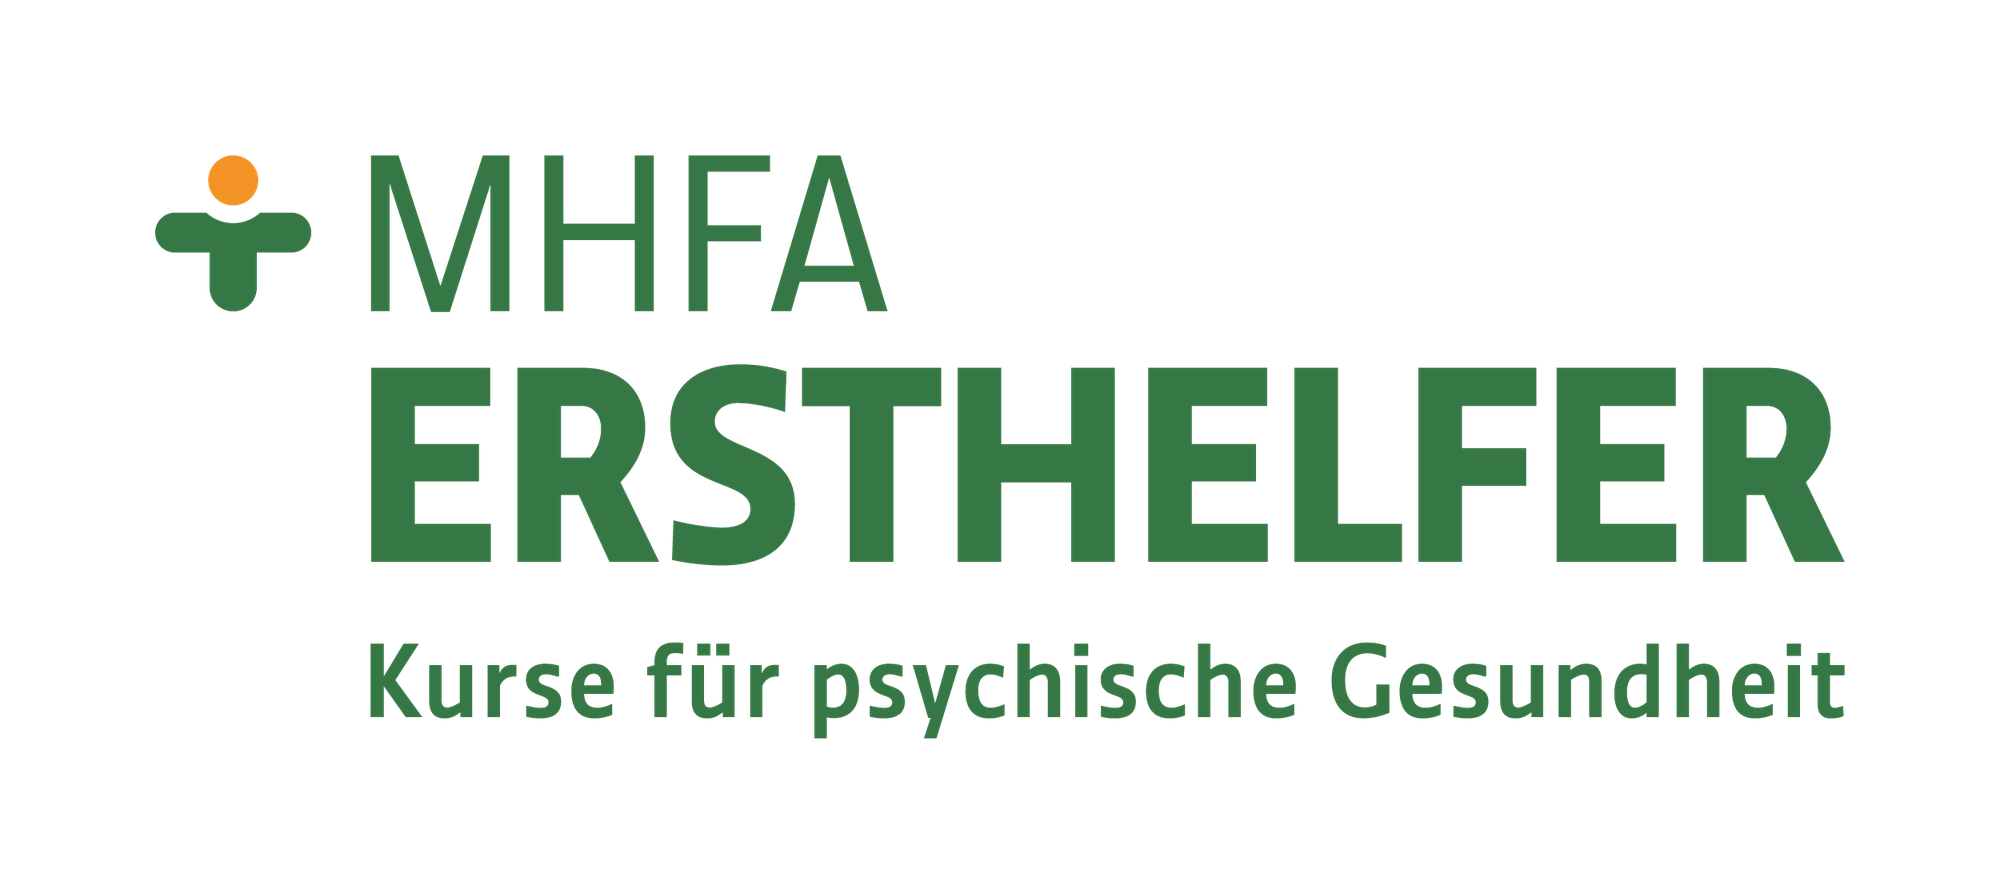 MHFA Ersthelfer für psychische Gesundheit